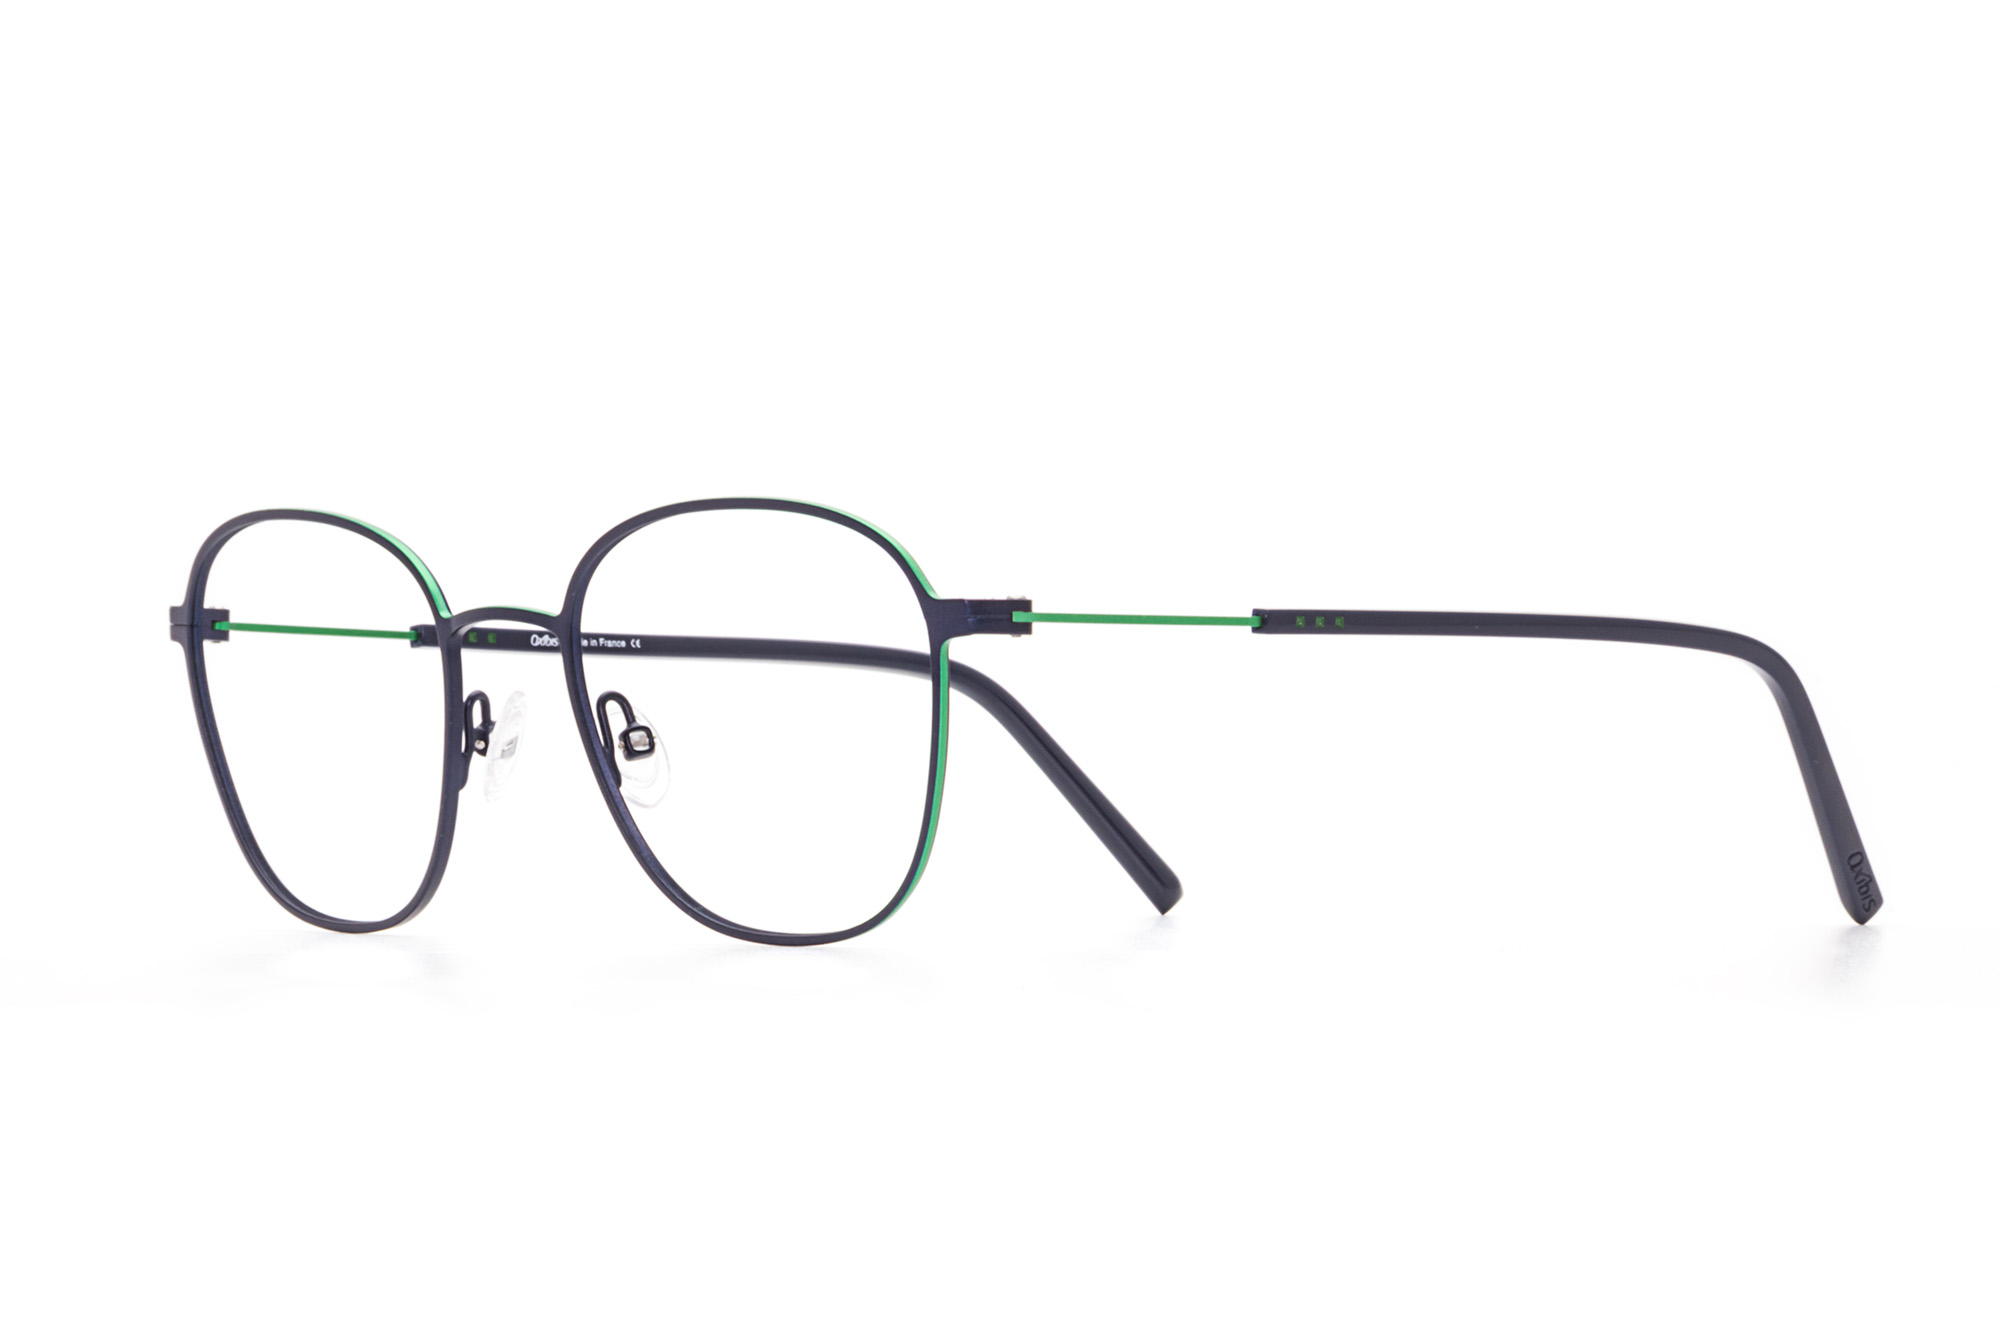 Kullanıma hazır optik tarzda işlenmiş camları ve optik uyumlu çerçevesiyle Oxibis Boost BO2C1 50 orta ekartman lacivert ve yeşil renkli dikdörtgen ve yuvarlak model erkek gözlüğünü optisyen veya gözlükçülerin sunacağı numarasız veya numaralı cam özelleştirmeleriyle size en yakın gözlükçüden satın alabilirsiniz.